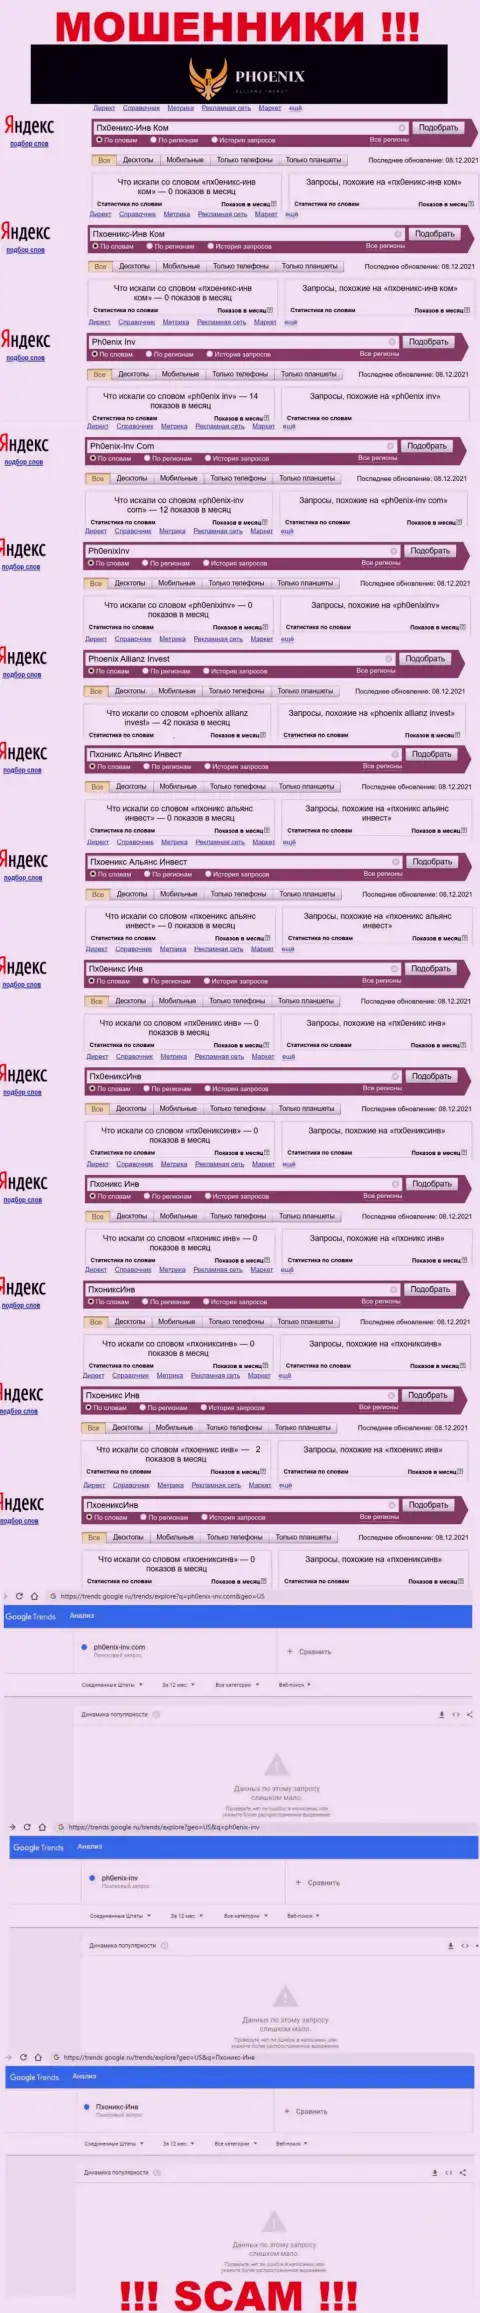 Скриншот результатов запросов по незаконно действующей конторе Пх0еникс-Инв Ком